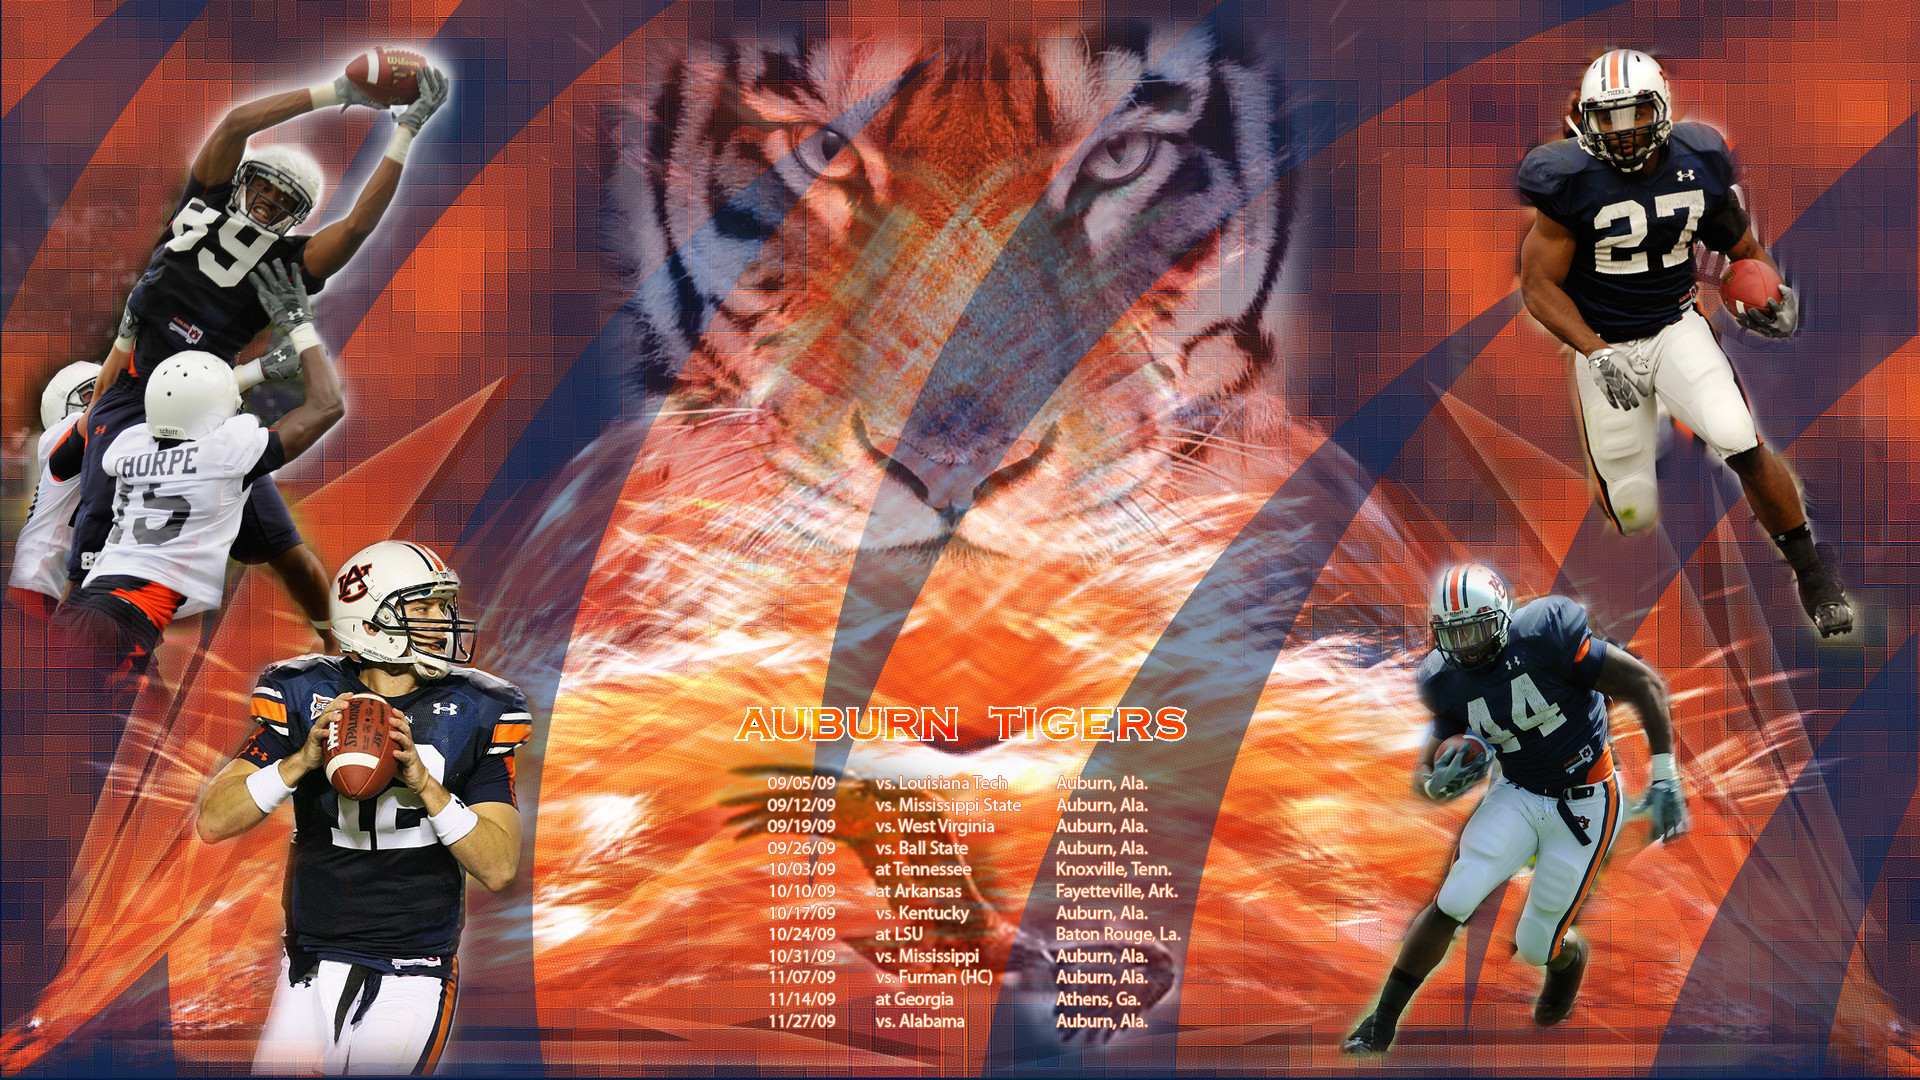 1920x1080  Auburn Tigers Football Wallpaper War Eagle Â· Download Â· 26 ...